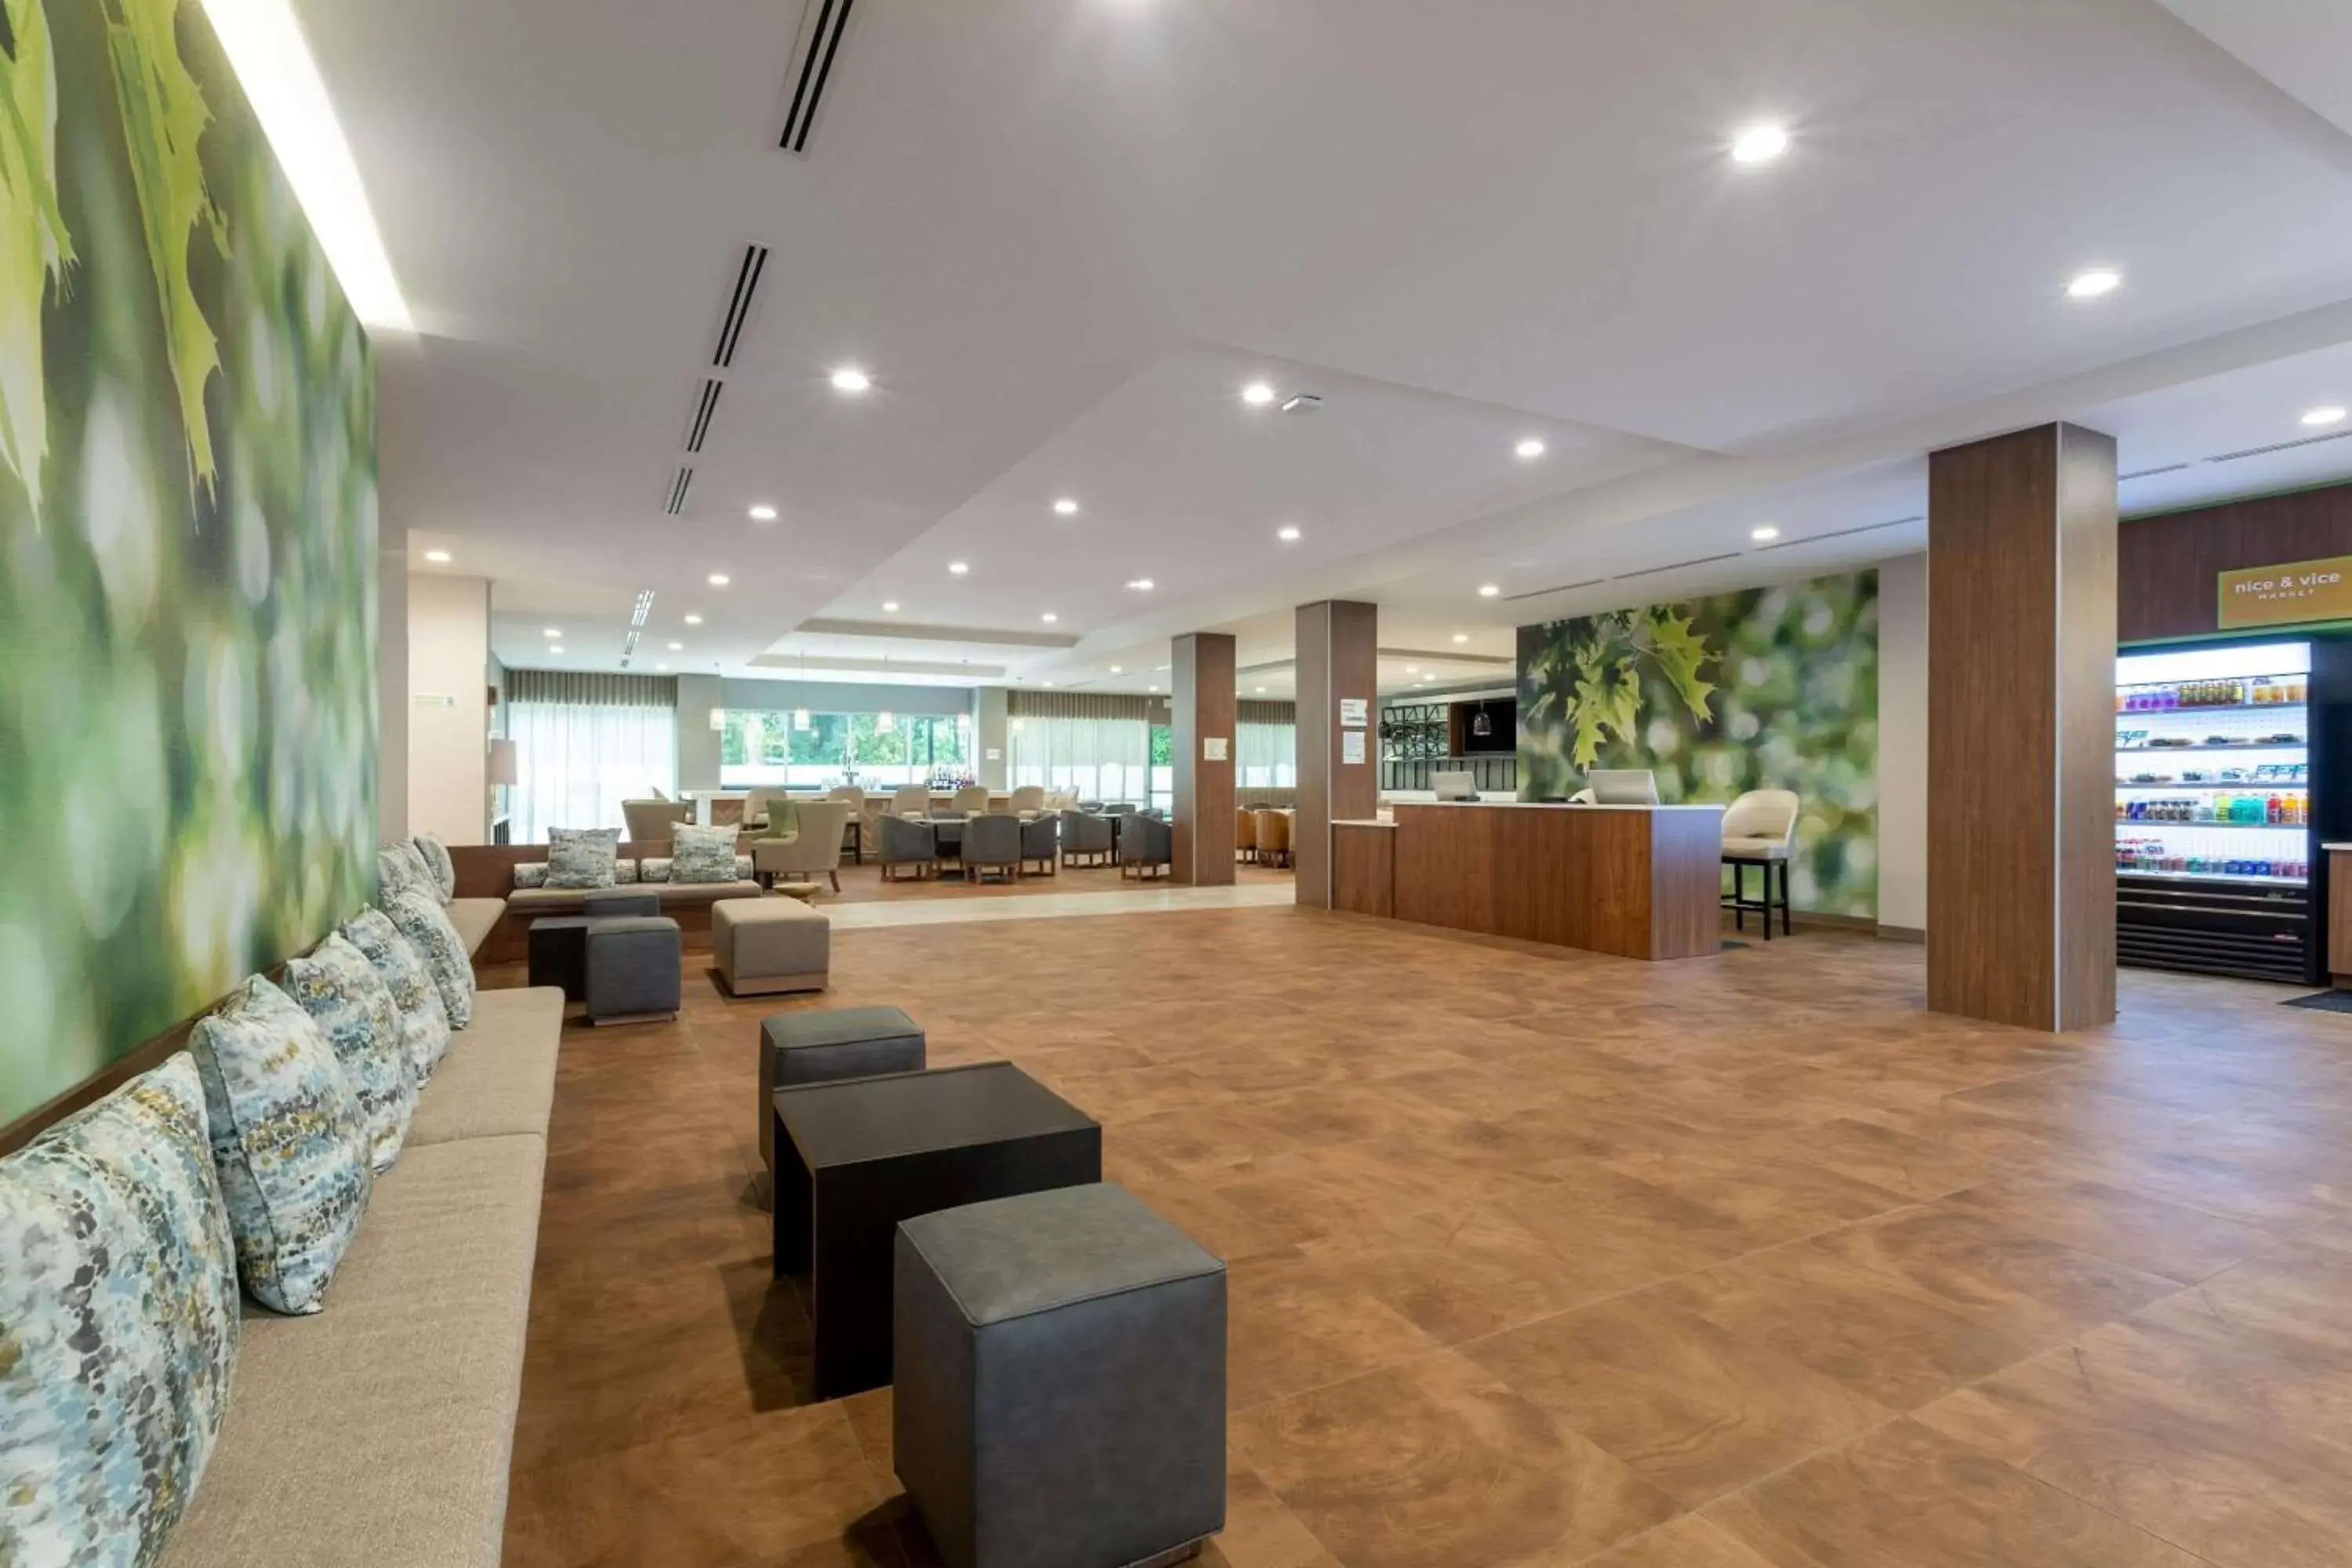 Lobby or reception, Lobby/Reception in Wyndham Garden Orlando Airport